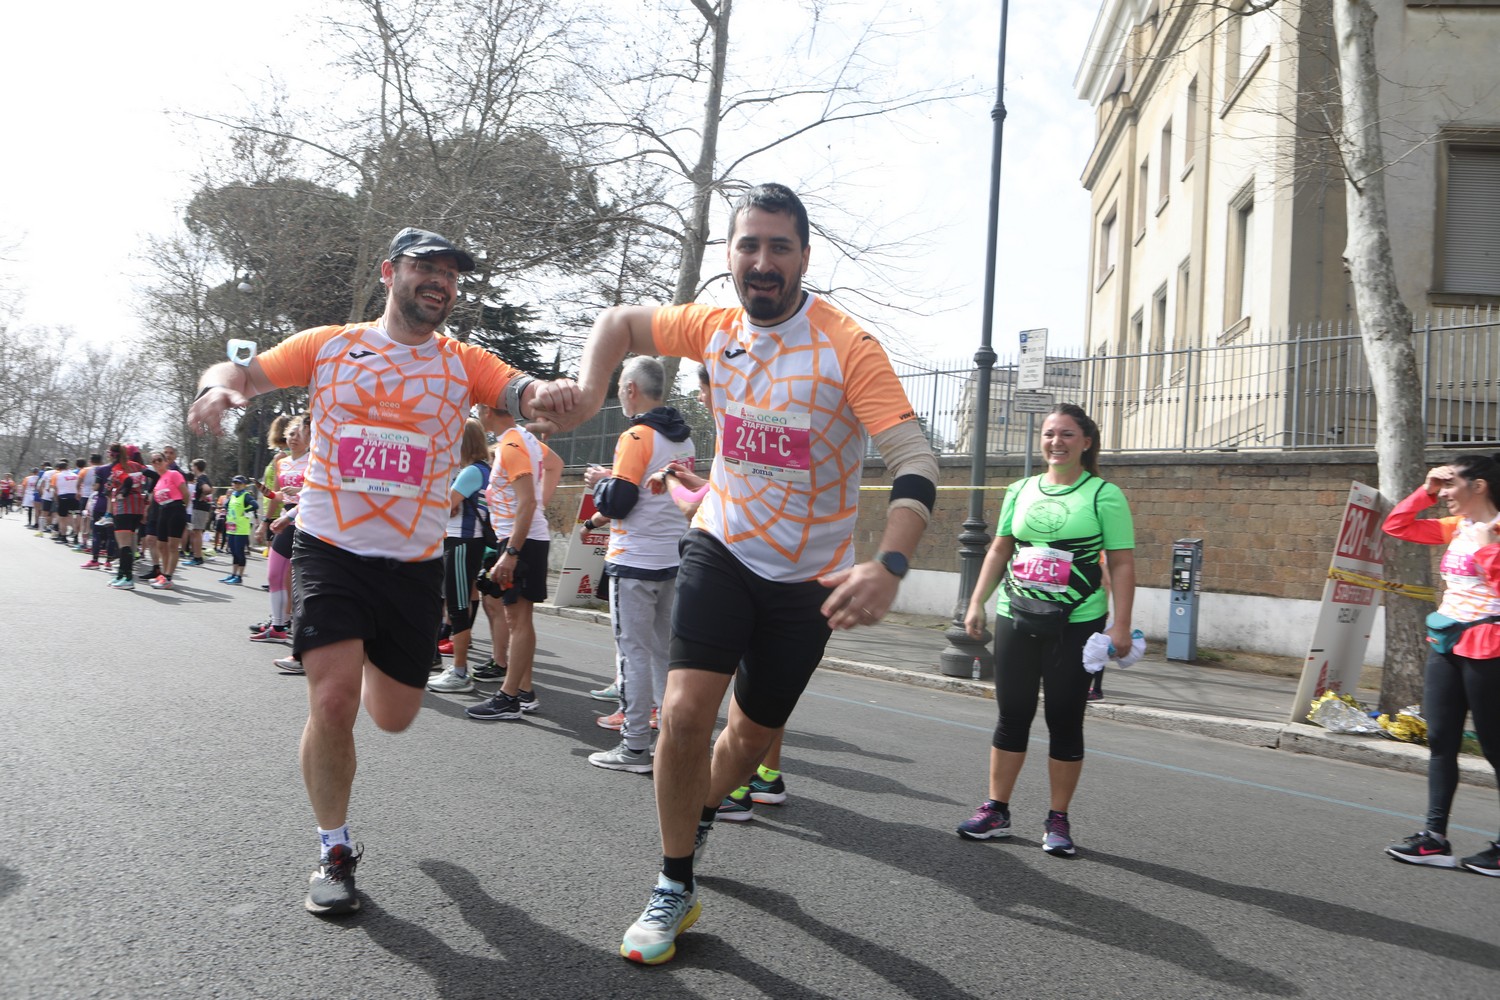 19 marzo 2023, aperte iscrizioni staffetta Run4Rome e stracittadina Fun Run, eventi di Acea Run Rome The Marathon